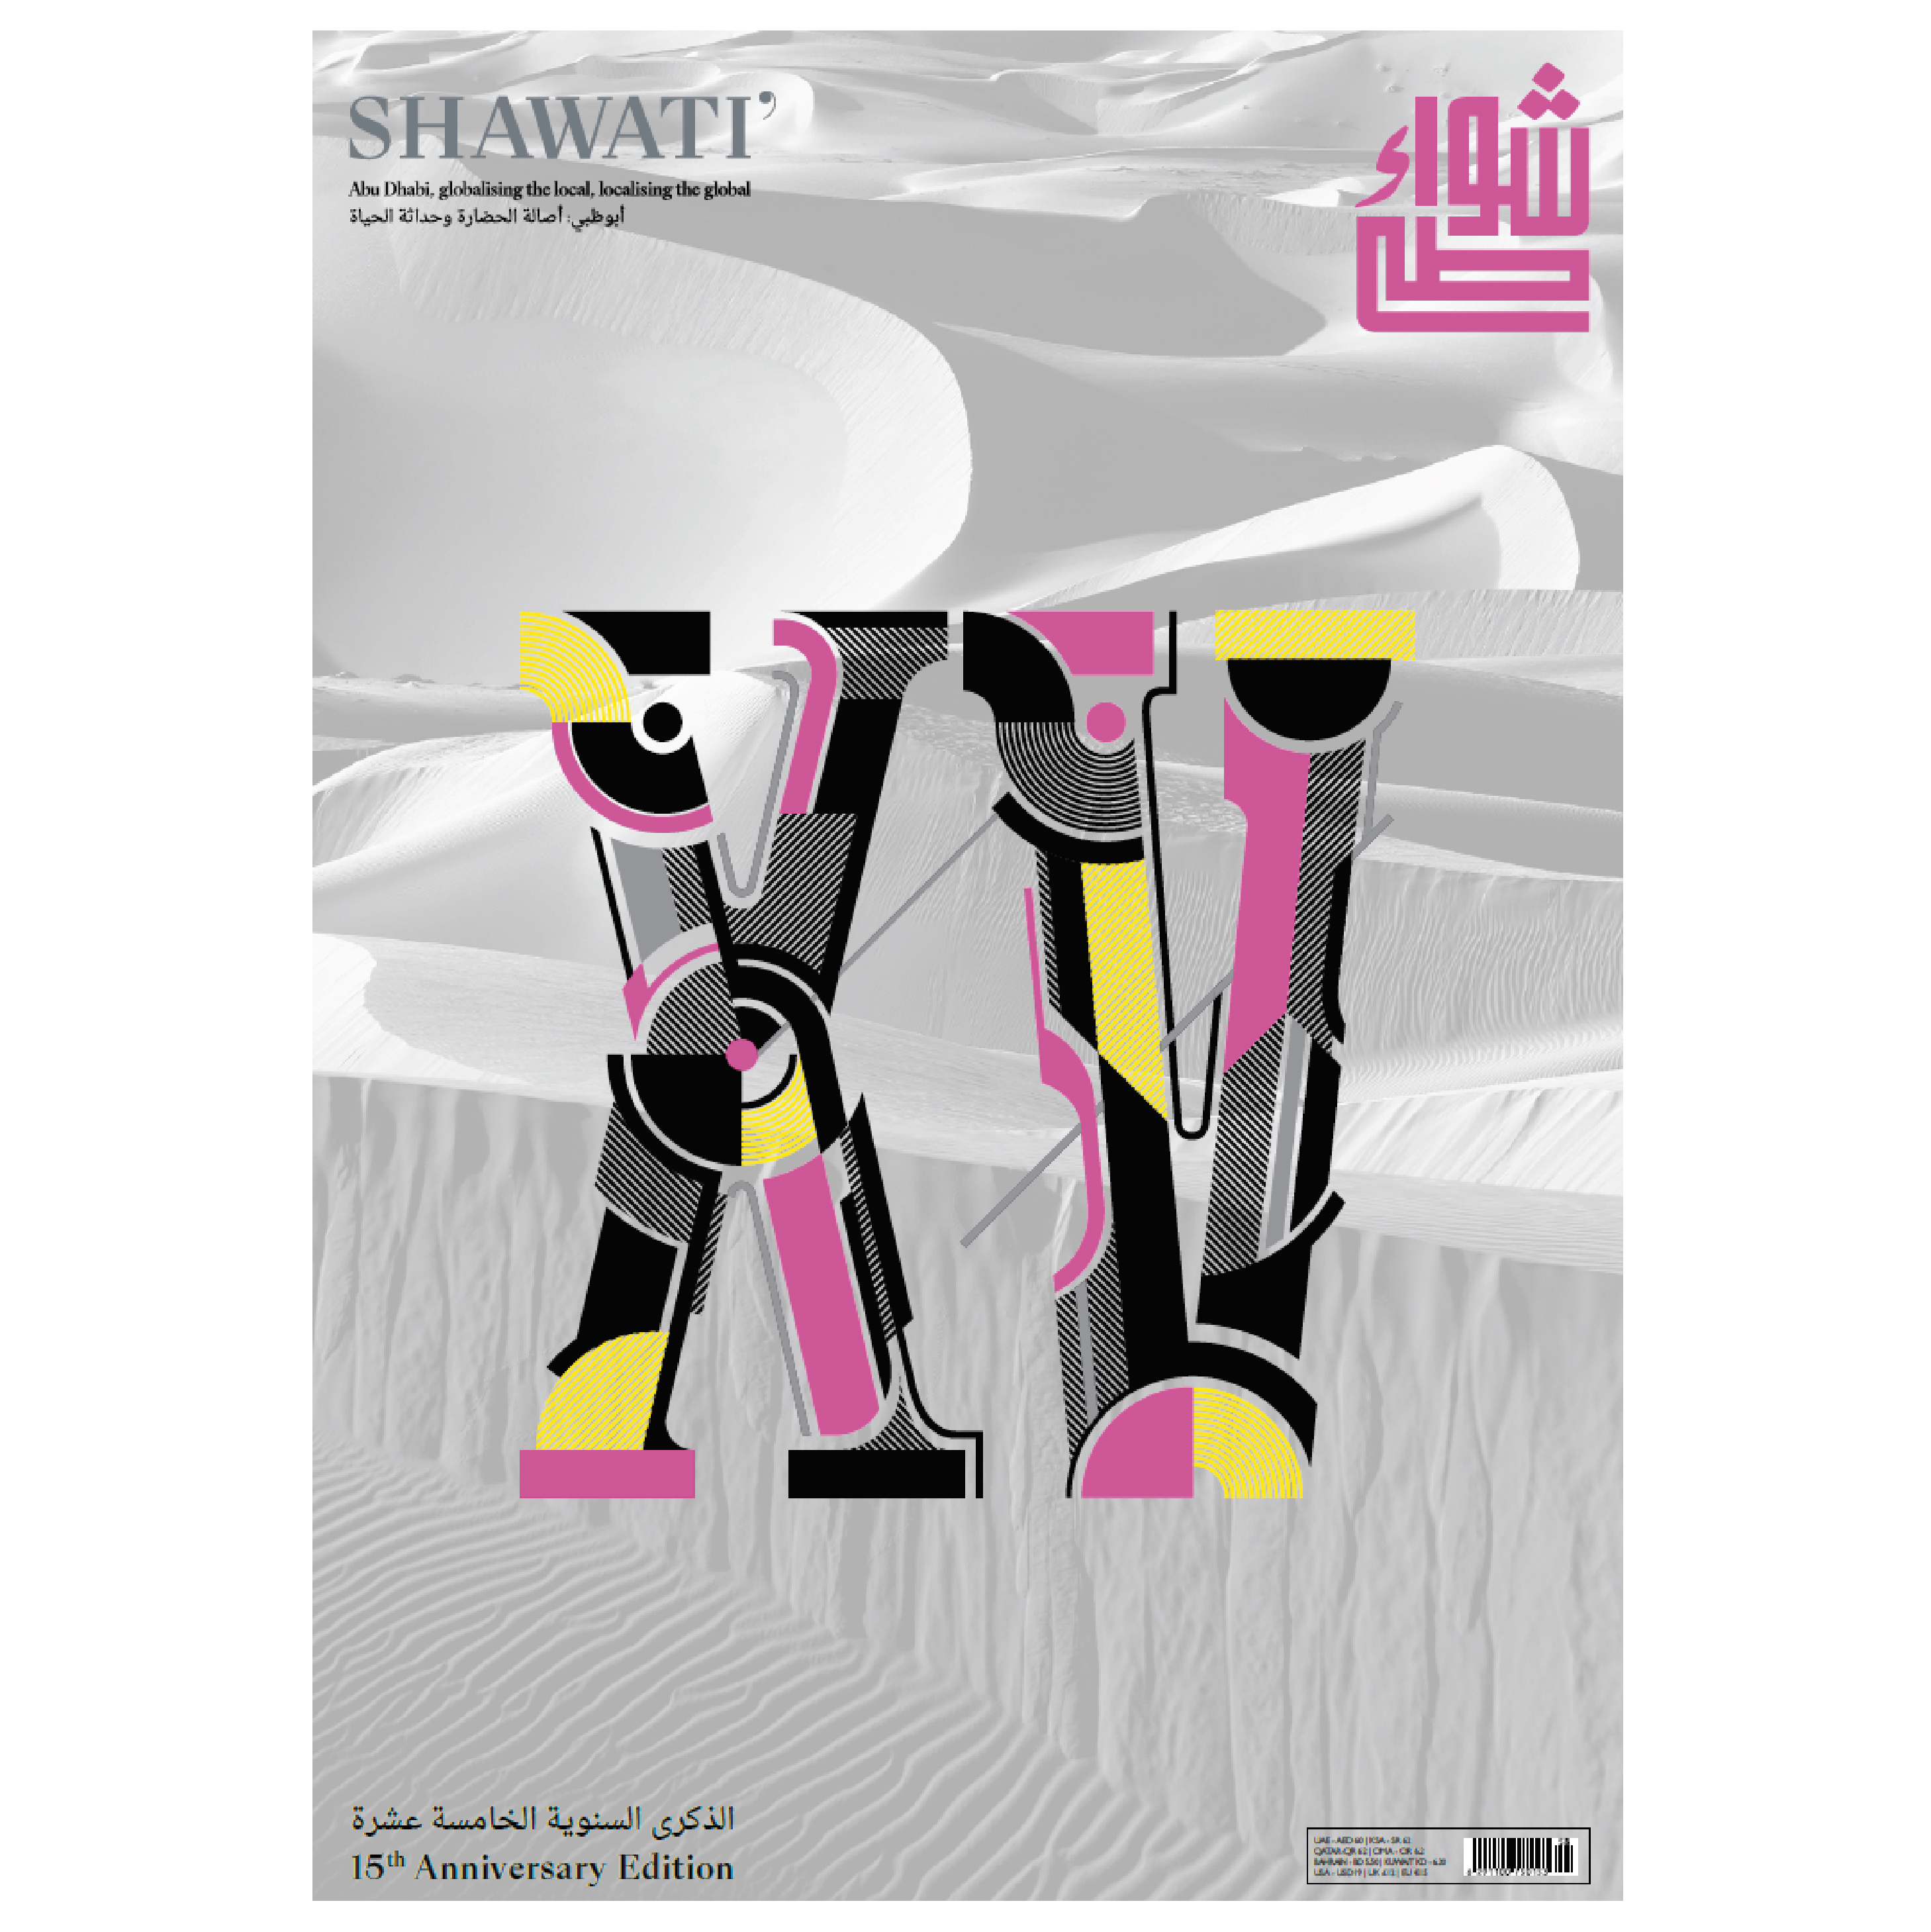 Shawati magazine. 15th anniversary by Jorge Gallardo - Creative Work